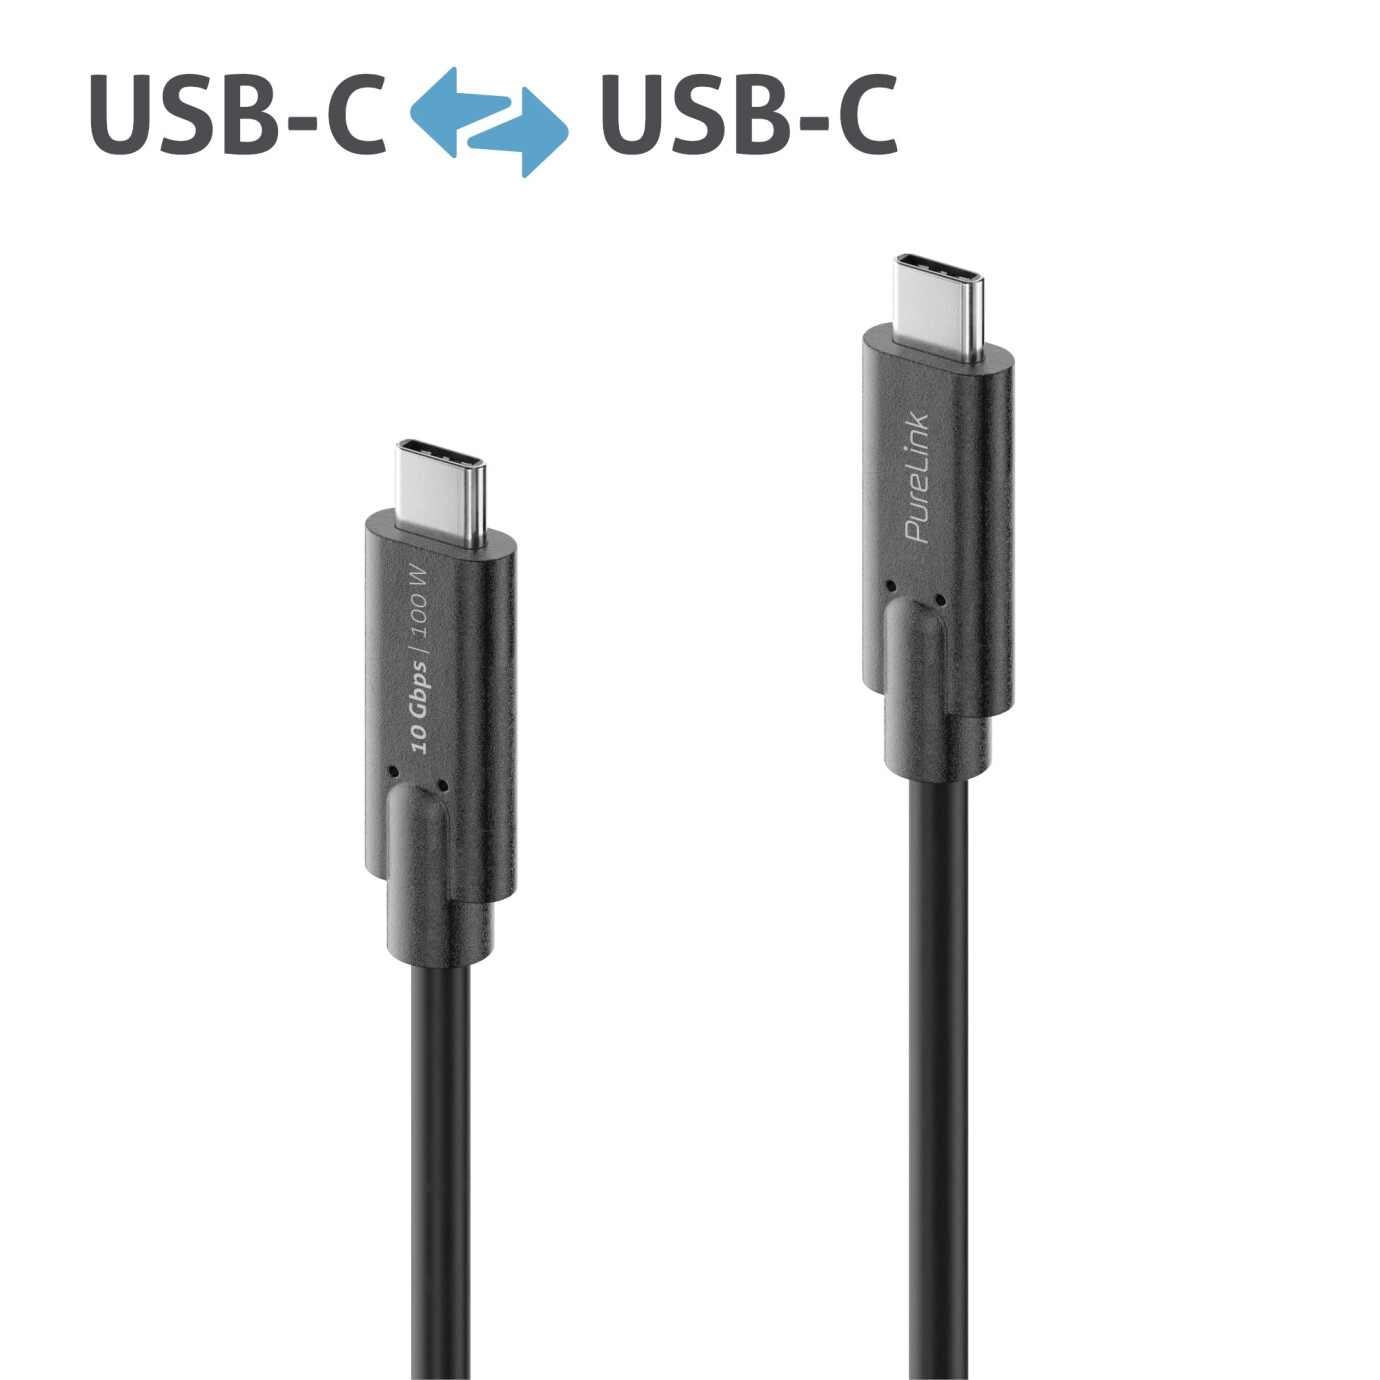 Purelink IS2511-015 USB-C auf USB-C (Gen 2) Kabel 1,5m schwarz